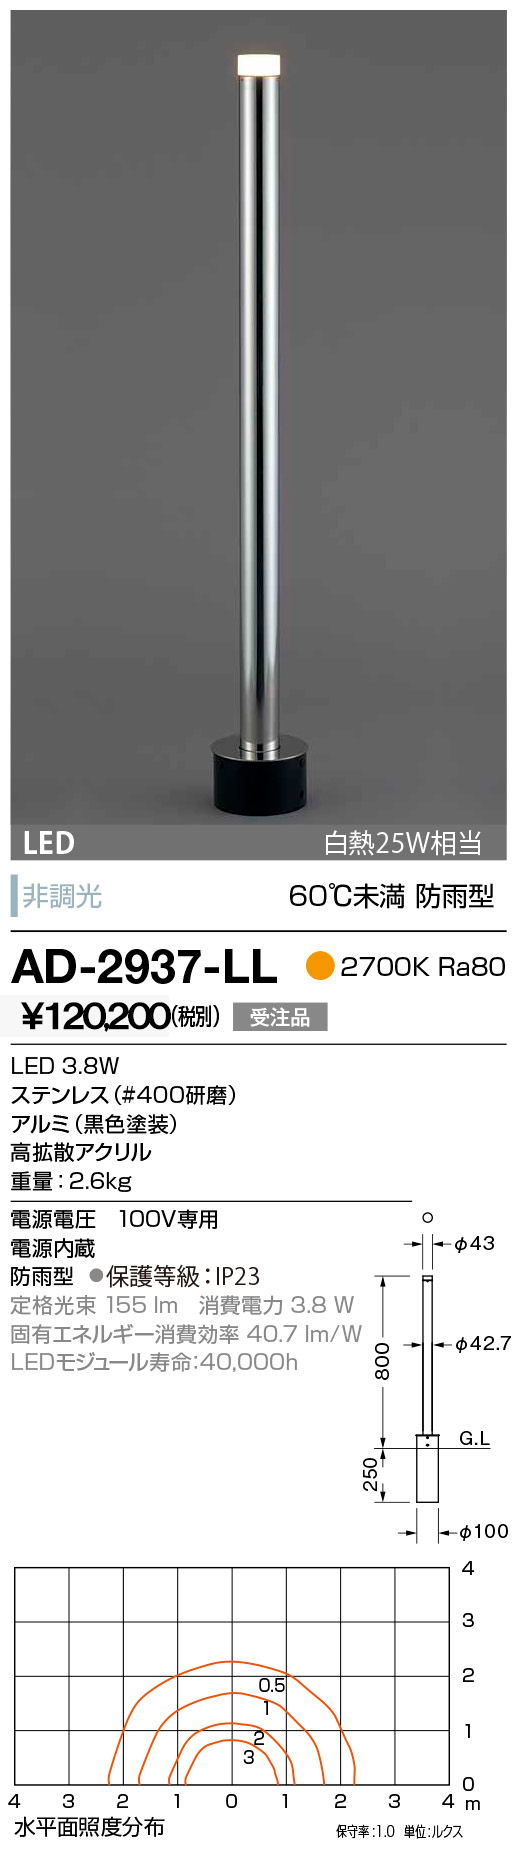 AD-2937-LL 山田照明 ガーデンライト シルバー LED 【格安SALEスタート】